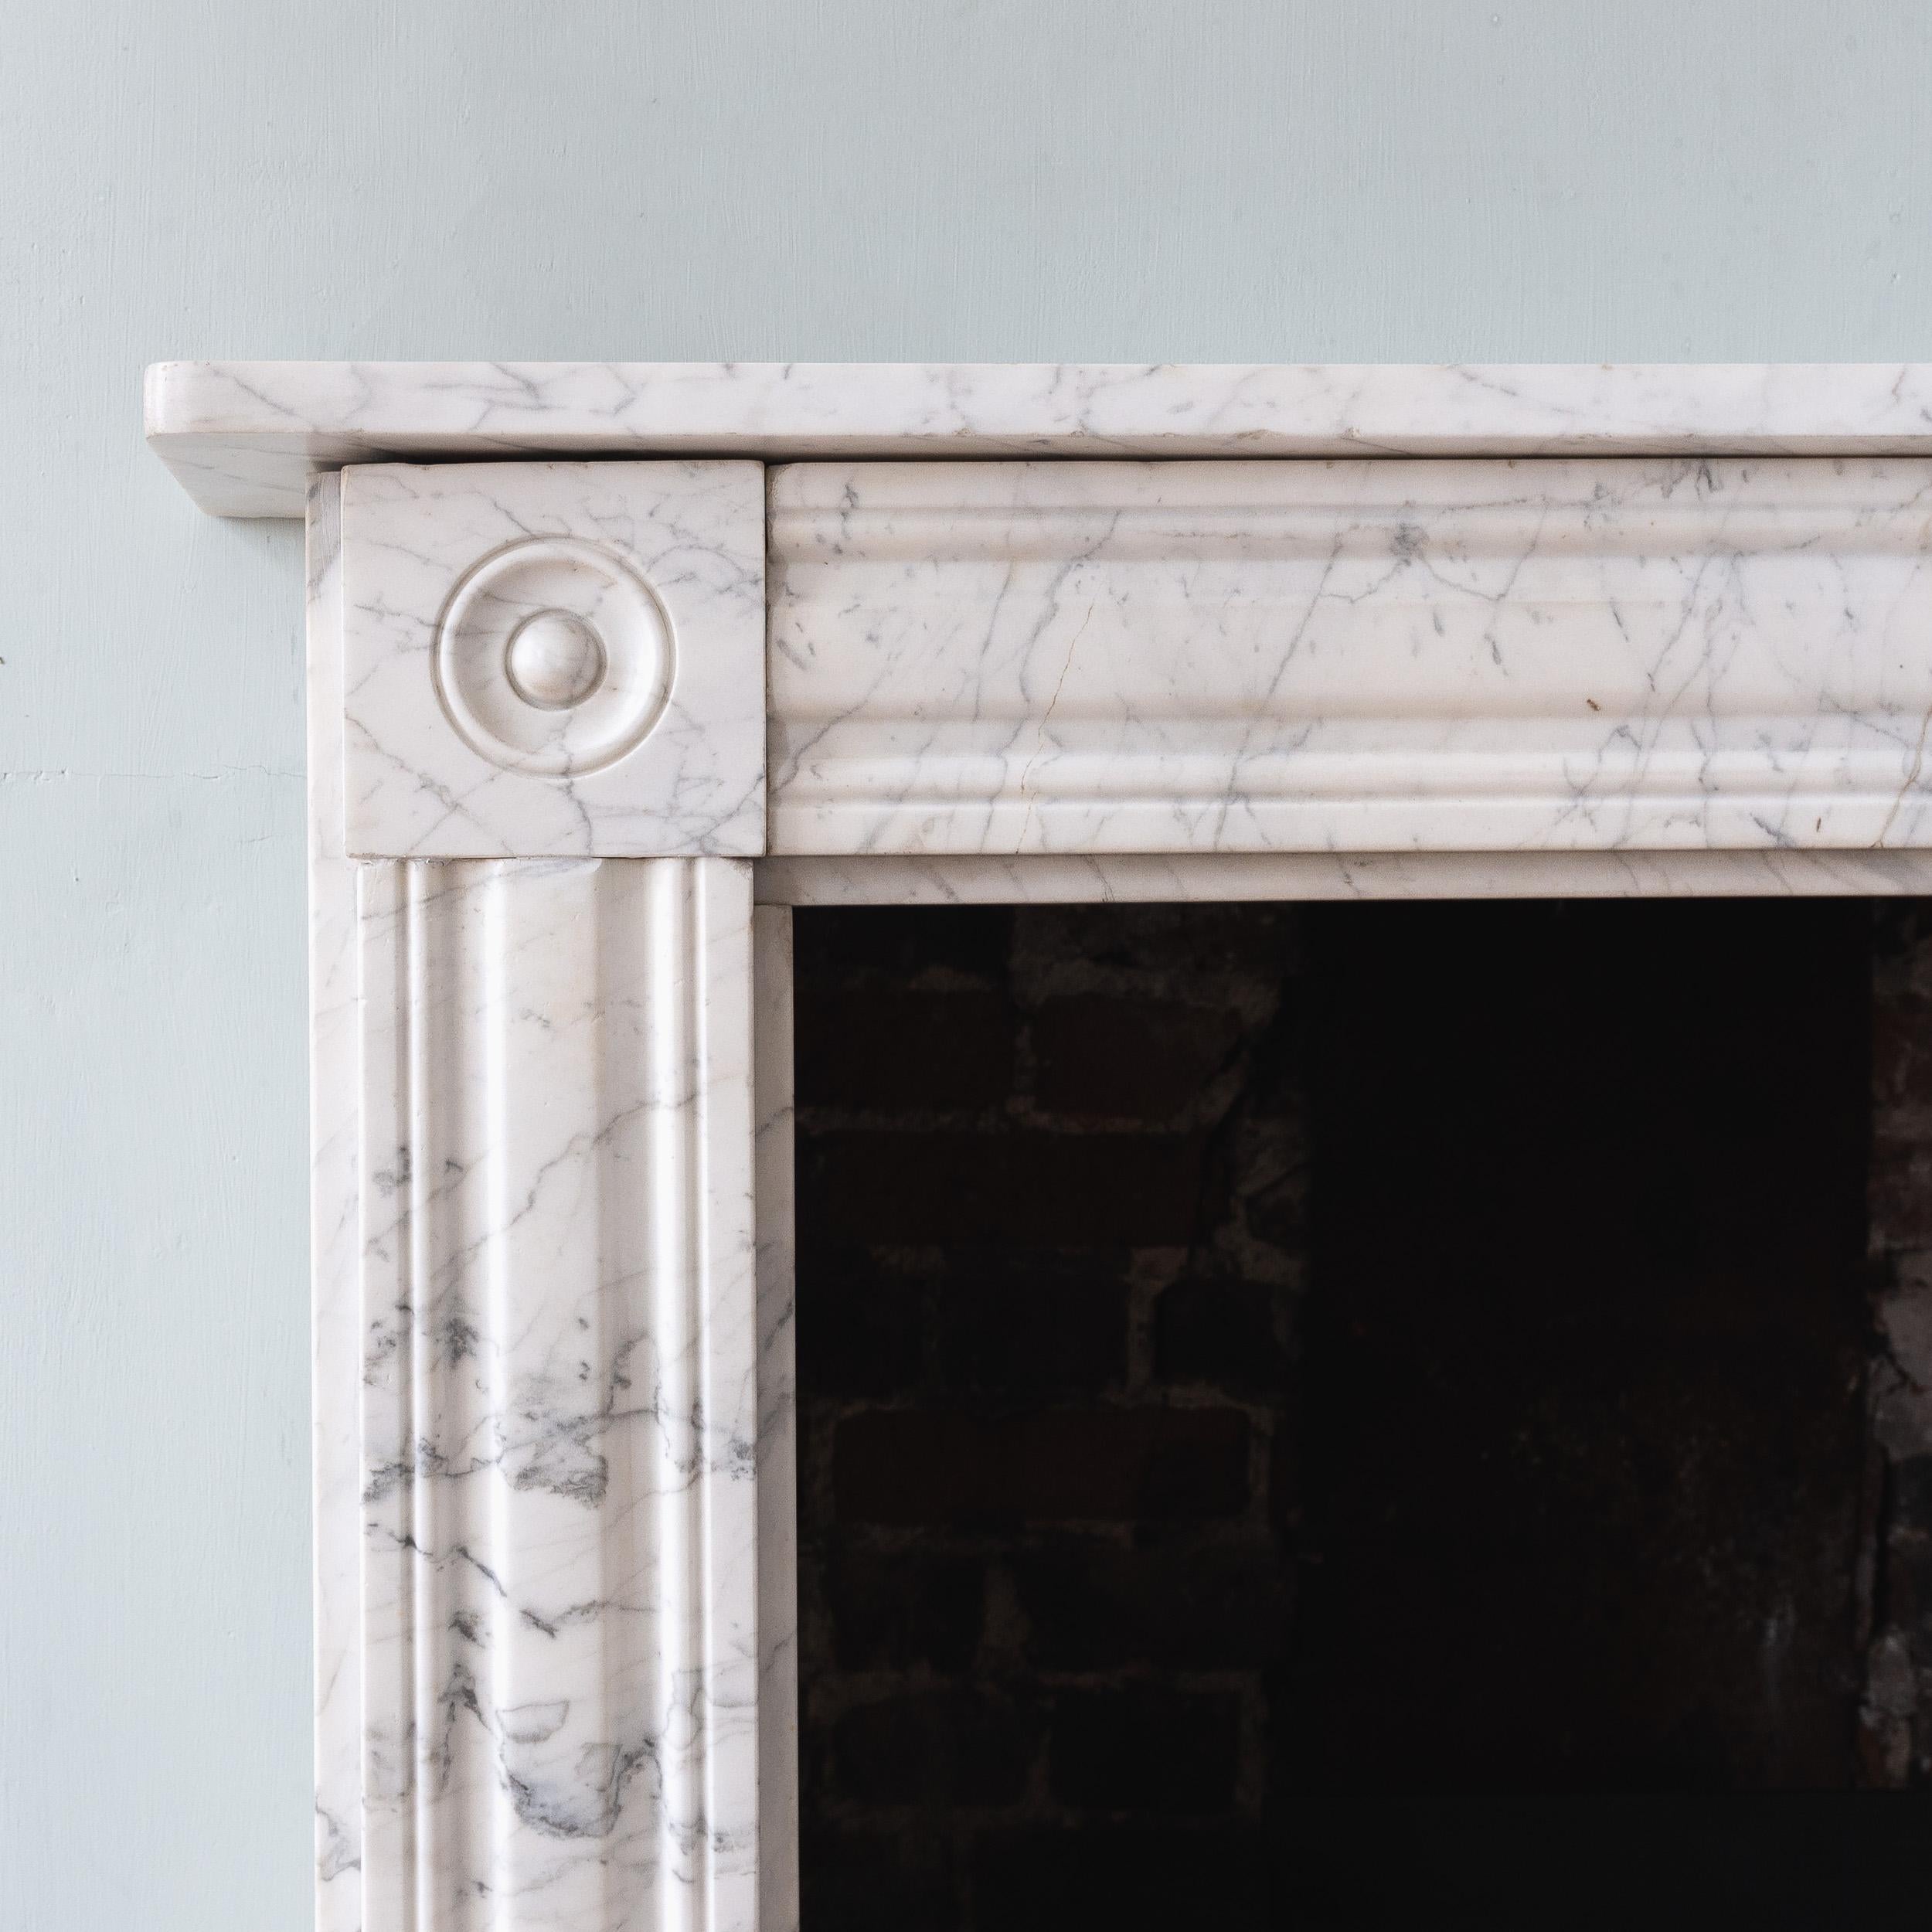 Ein englischer Kamin aus Carrara-Marmor aus der Regency-Periode, um 1820, mit profiliertem Fries und Pfosten.

Öffnungsbreite 93,5 cm x 90 cm hoch, Außenpfosten zu Pfosten 127,5 cm breit.

Bereit zur Installation und Nutzung.